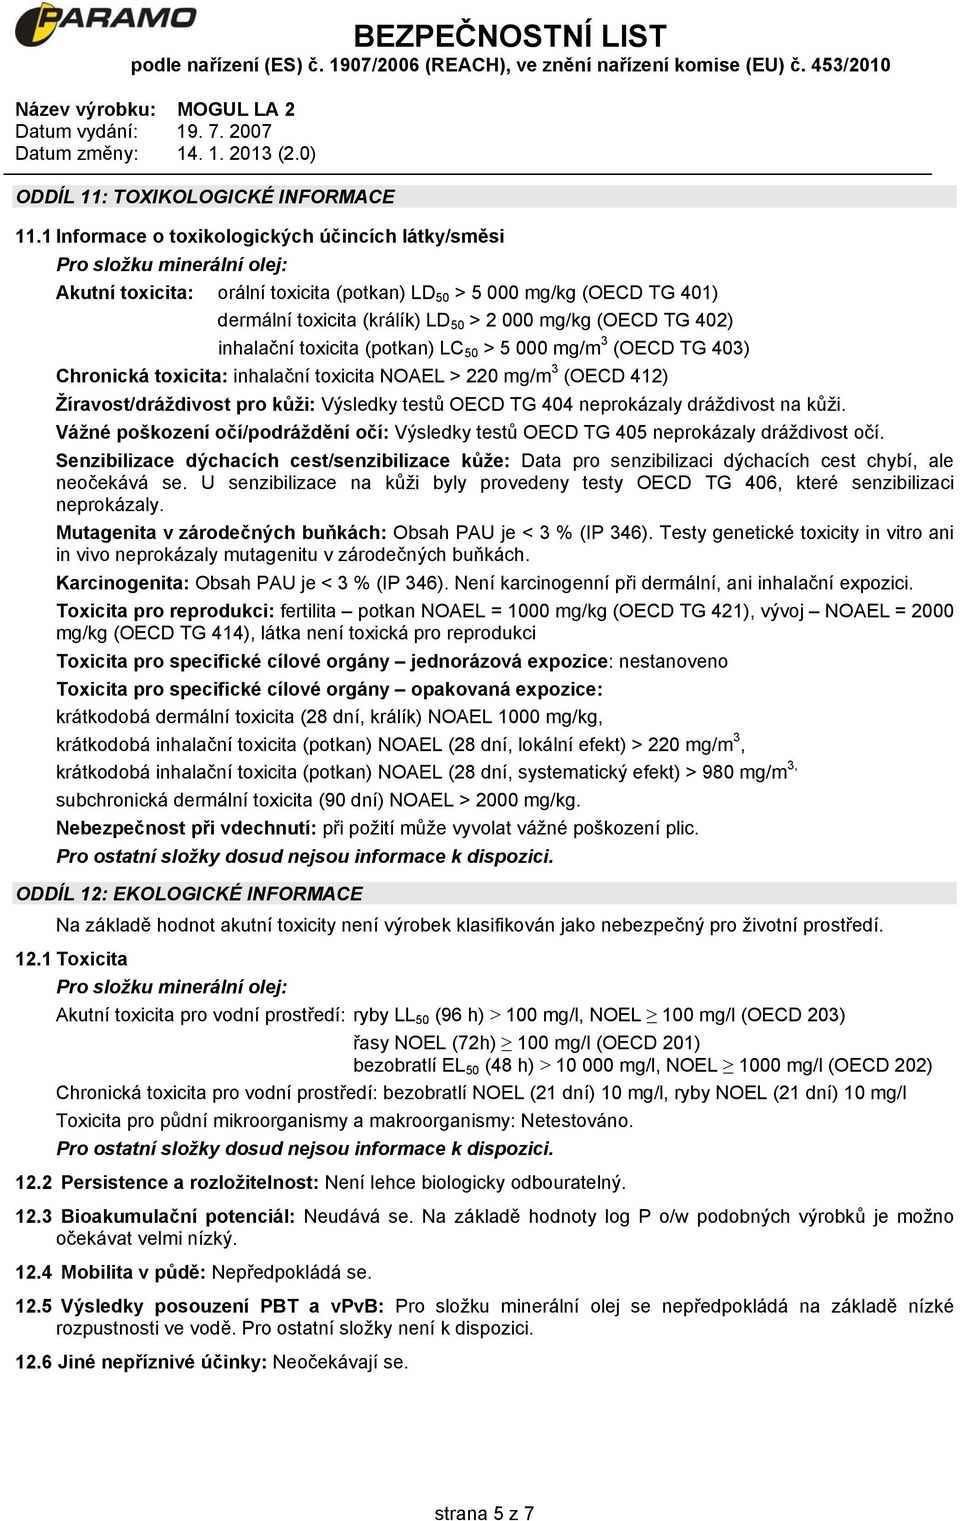 mg/kg (OECD TG 402) inhalační toxicita (potkan) LC 50 > 5 000 mg/m 3 (OECD TG 403) Chronická toxicita: inhalační toxicita NOAEL > 220 mg/m 3 (OECD 412) Žíravost/dráždivost pro kůži: Výsledky testů